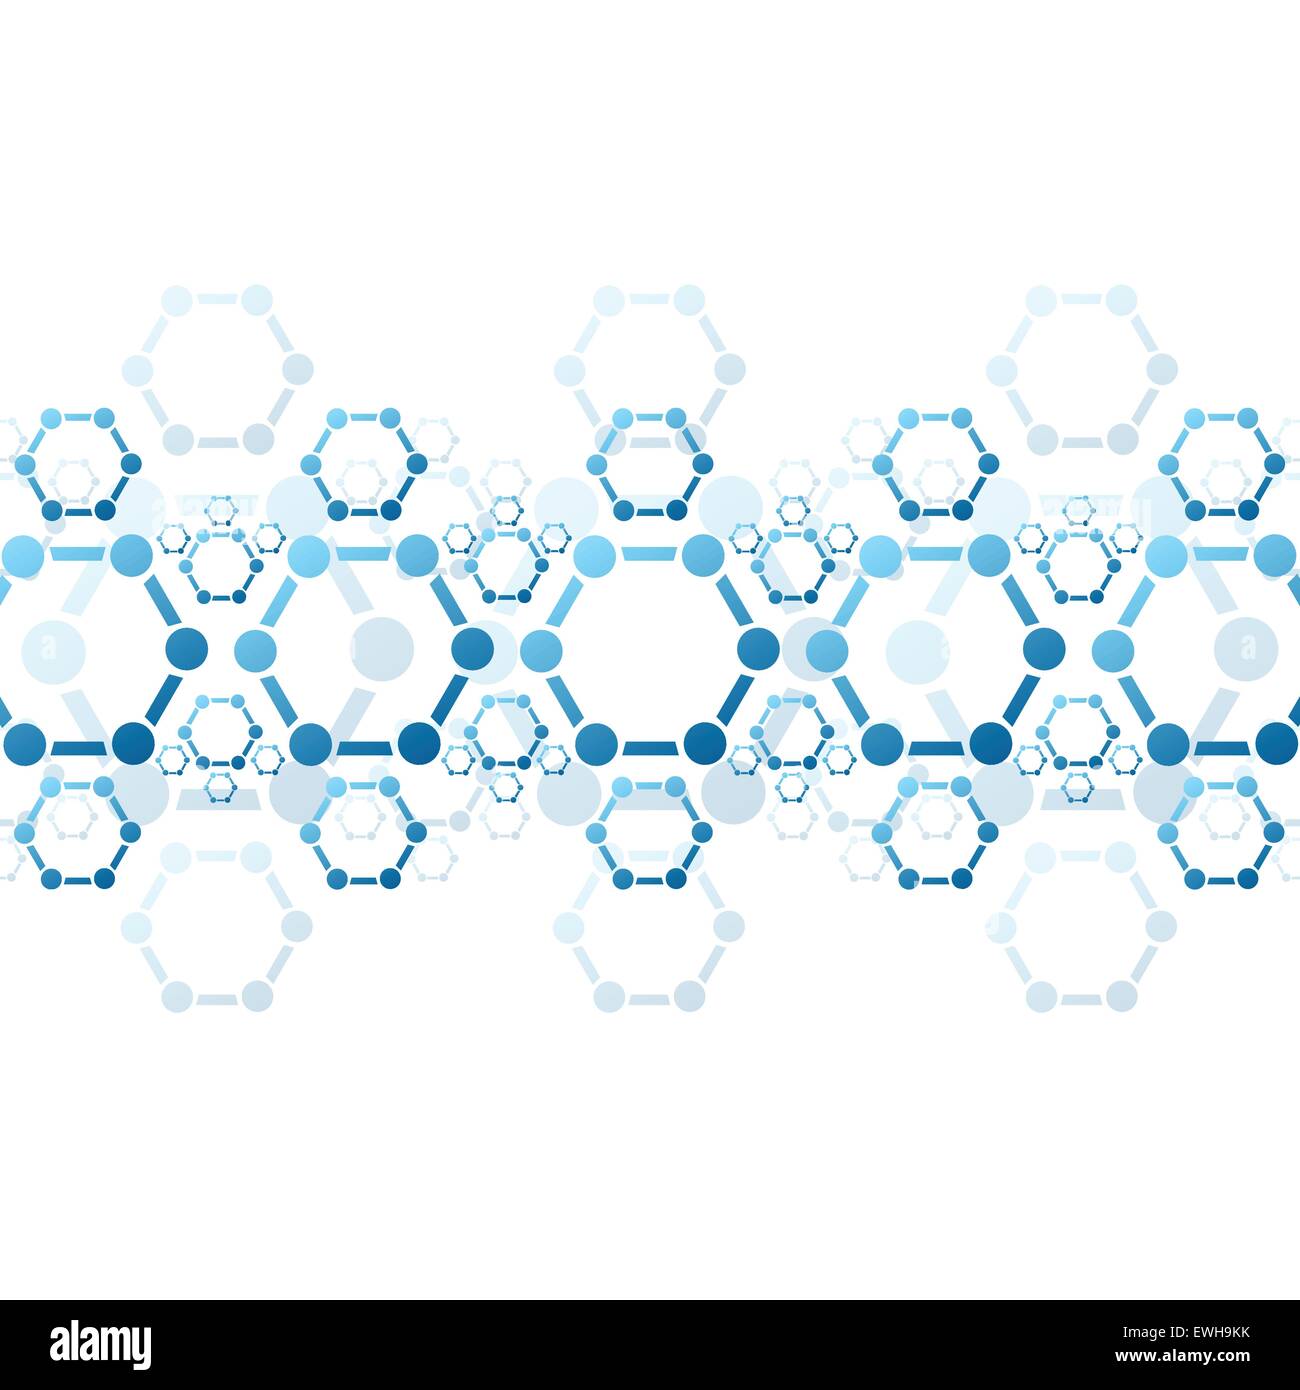 Zusammenfassung Hintergrund des blauen Molekülstruktur. Wissenschaftlichen medizinischen Vektor-design Stock Vektor